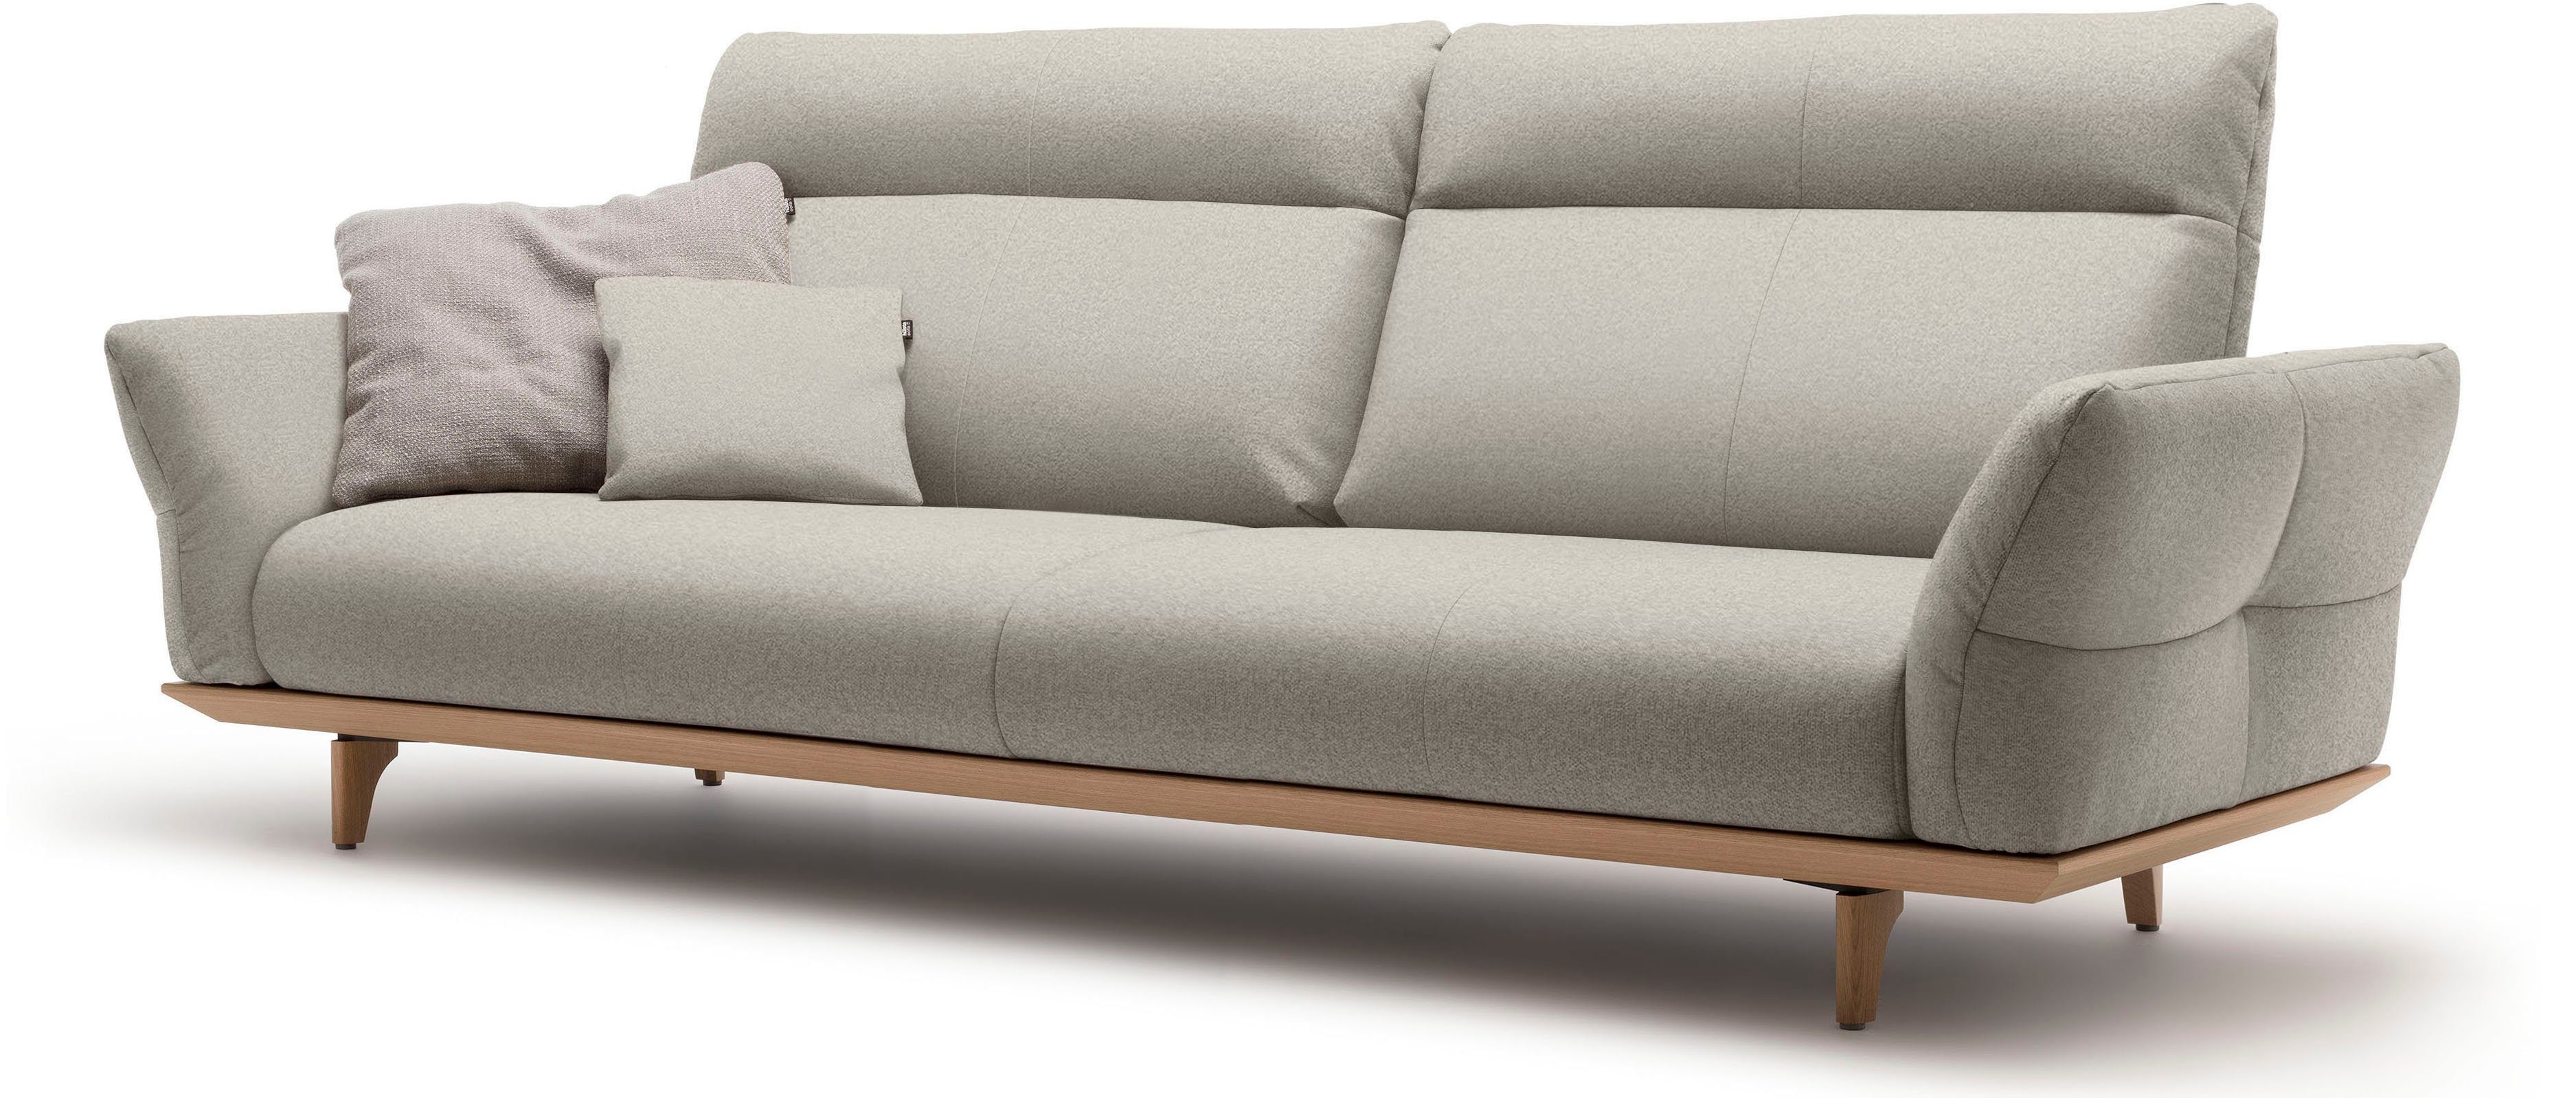 248 sofa Eiche Sockel in hs.460, cm Füße Eiche, natur, 4-Sitzer Breite hülsta